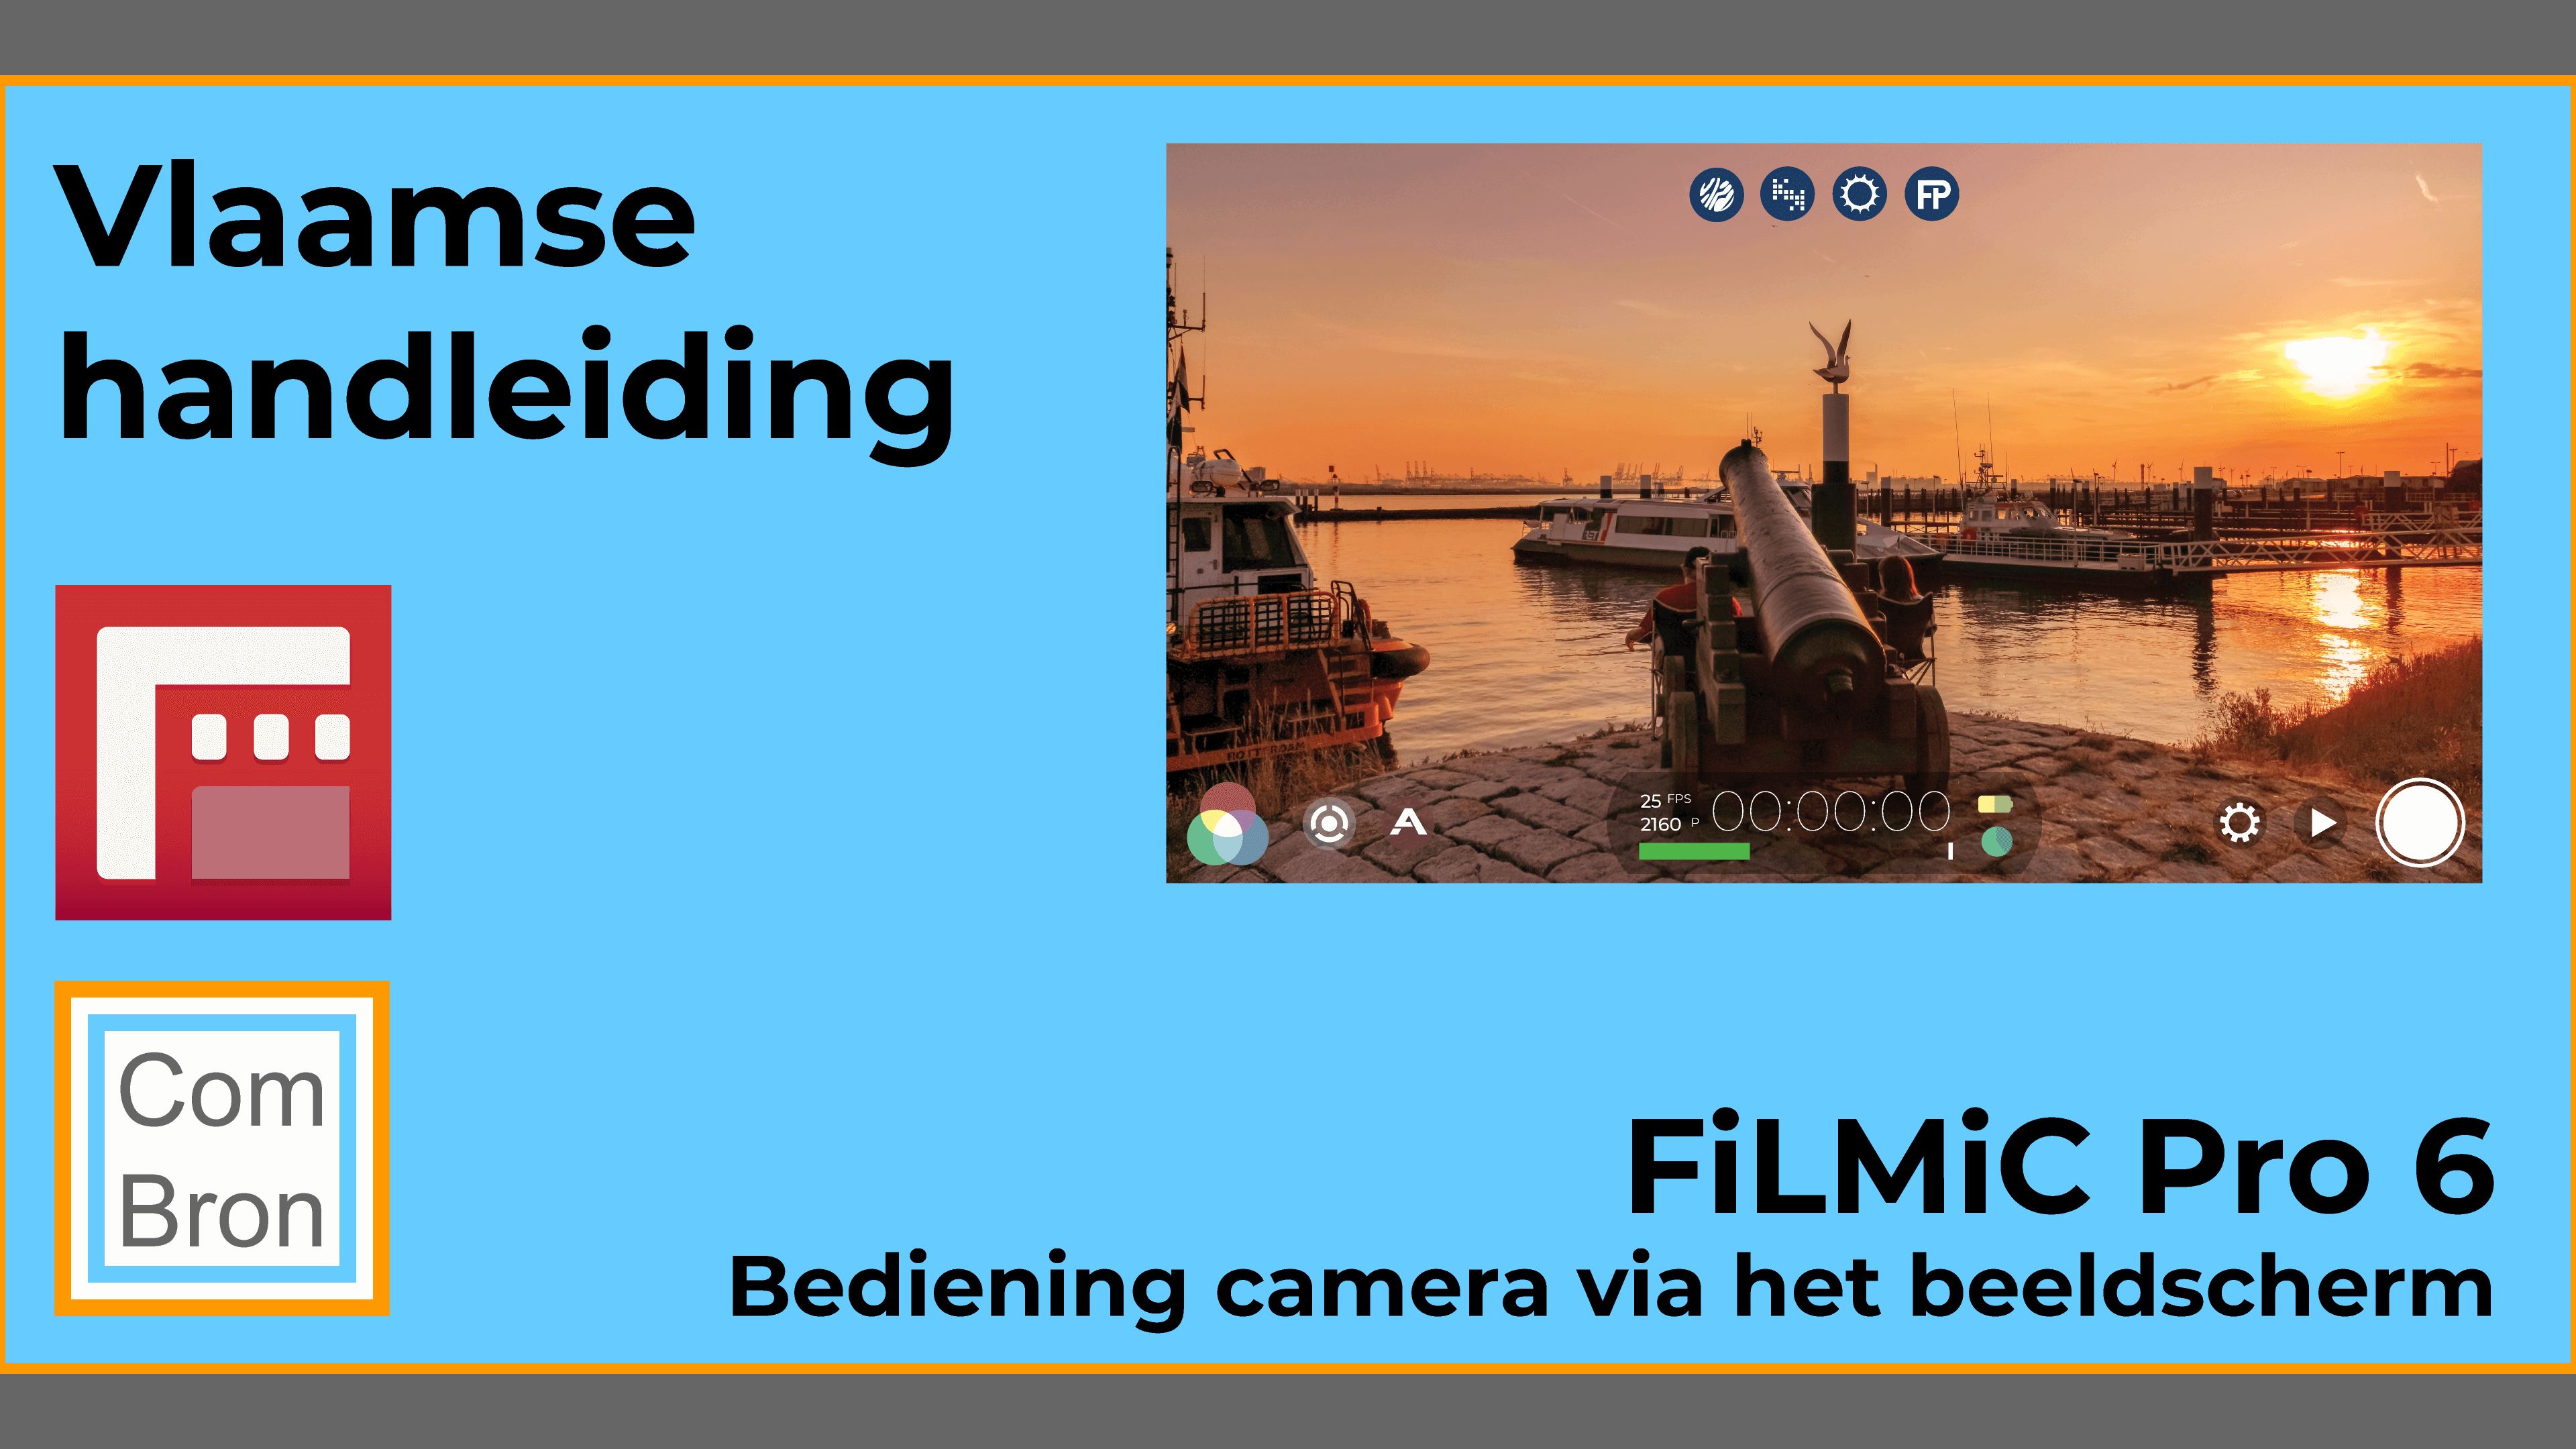 Vlaamse gebruiksaanwijzing FiLMiC Pro 6: "Bediening camera via het beeldscherm".